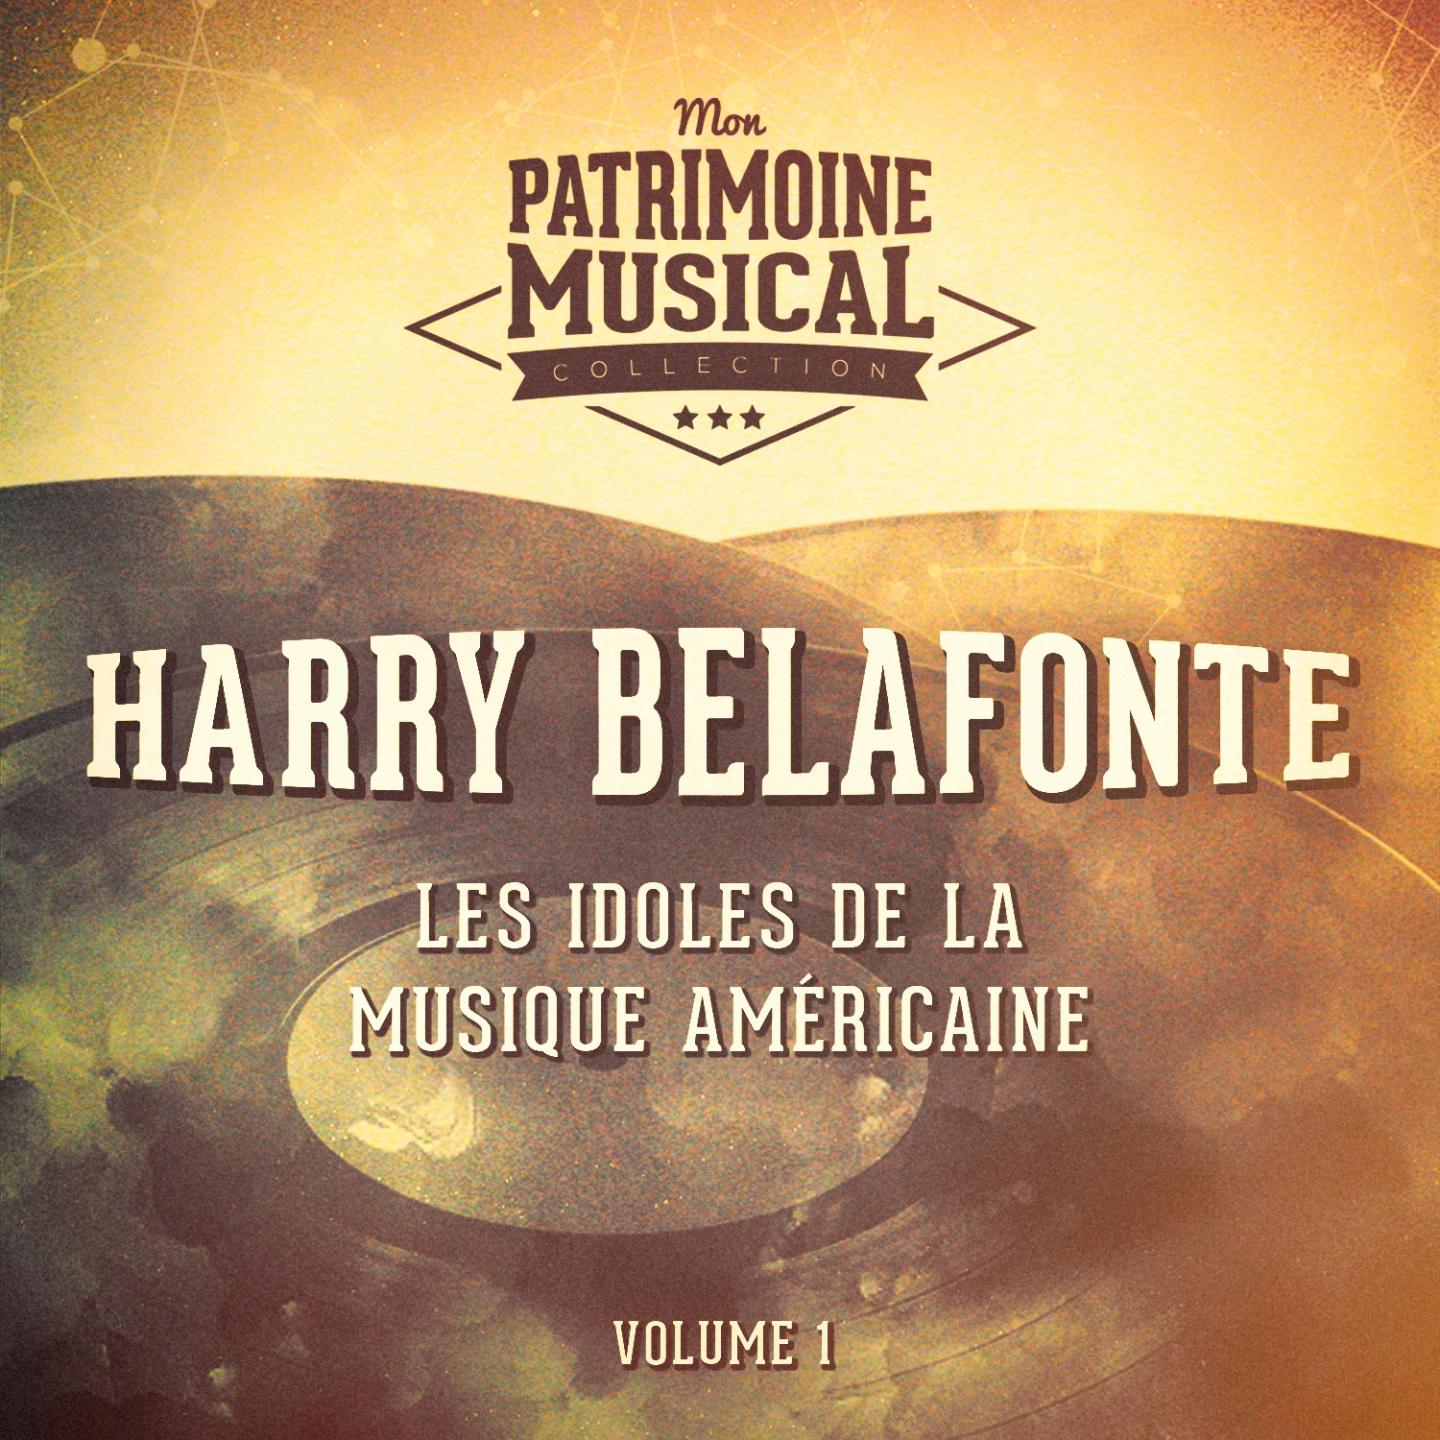 Les idoles de la musique américaine : Harry Belafonte, Vol. 1